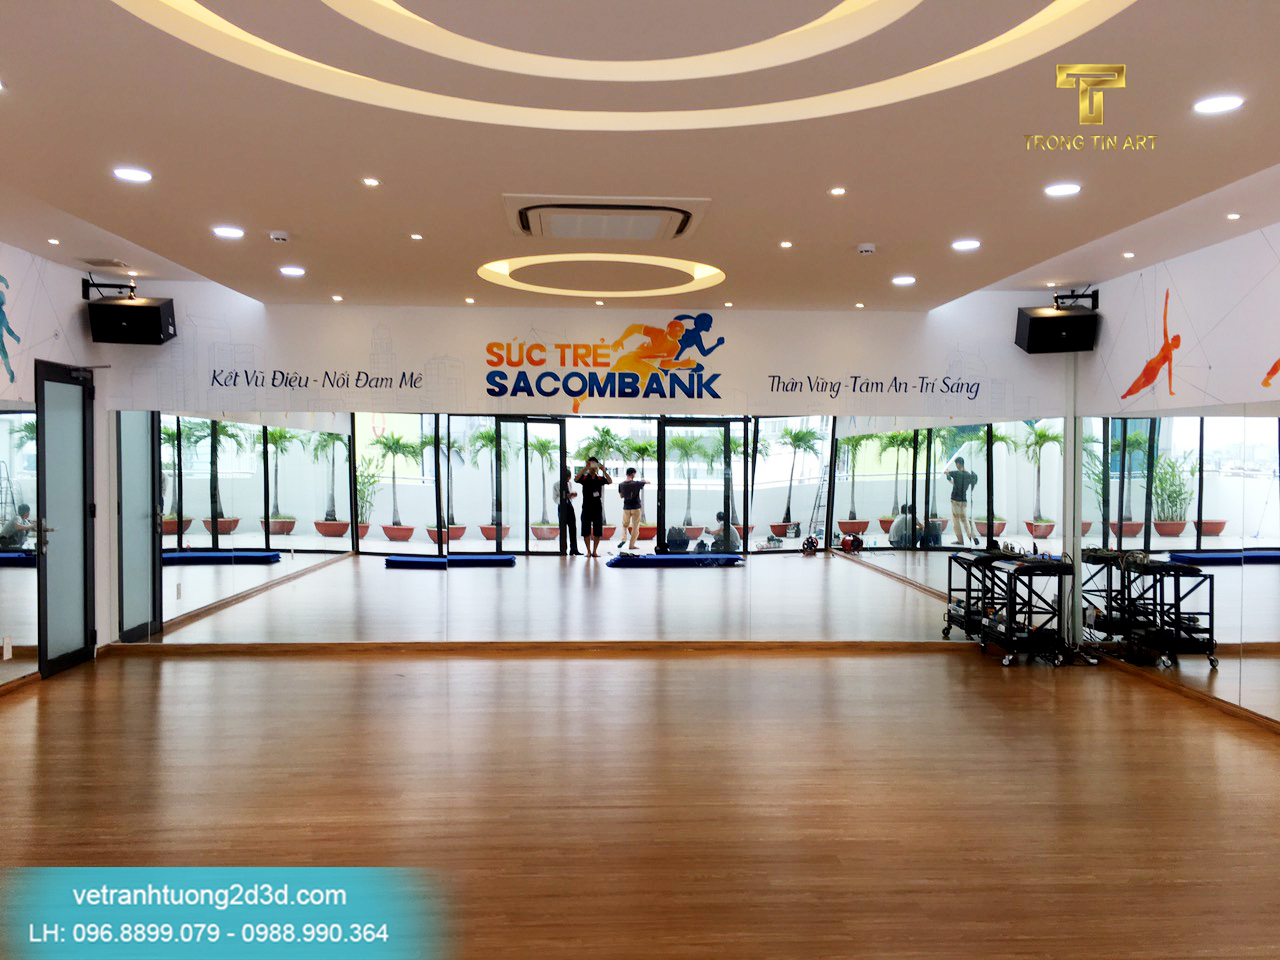 Vẽ tranh tường phòng tập Yoga,dacing cho ngân hàng Sacombank.